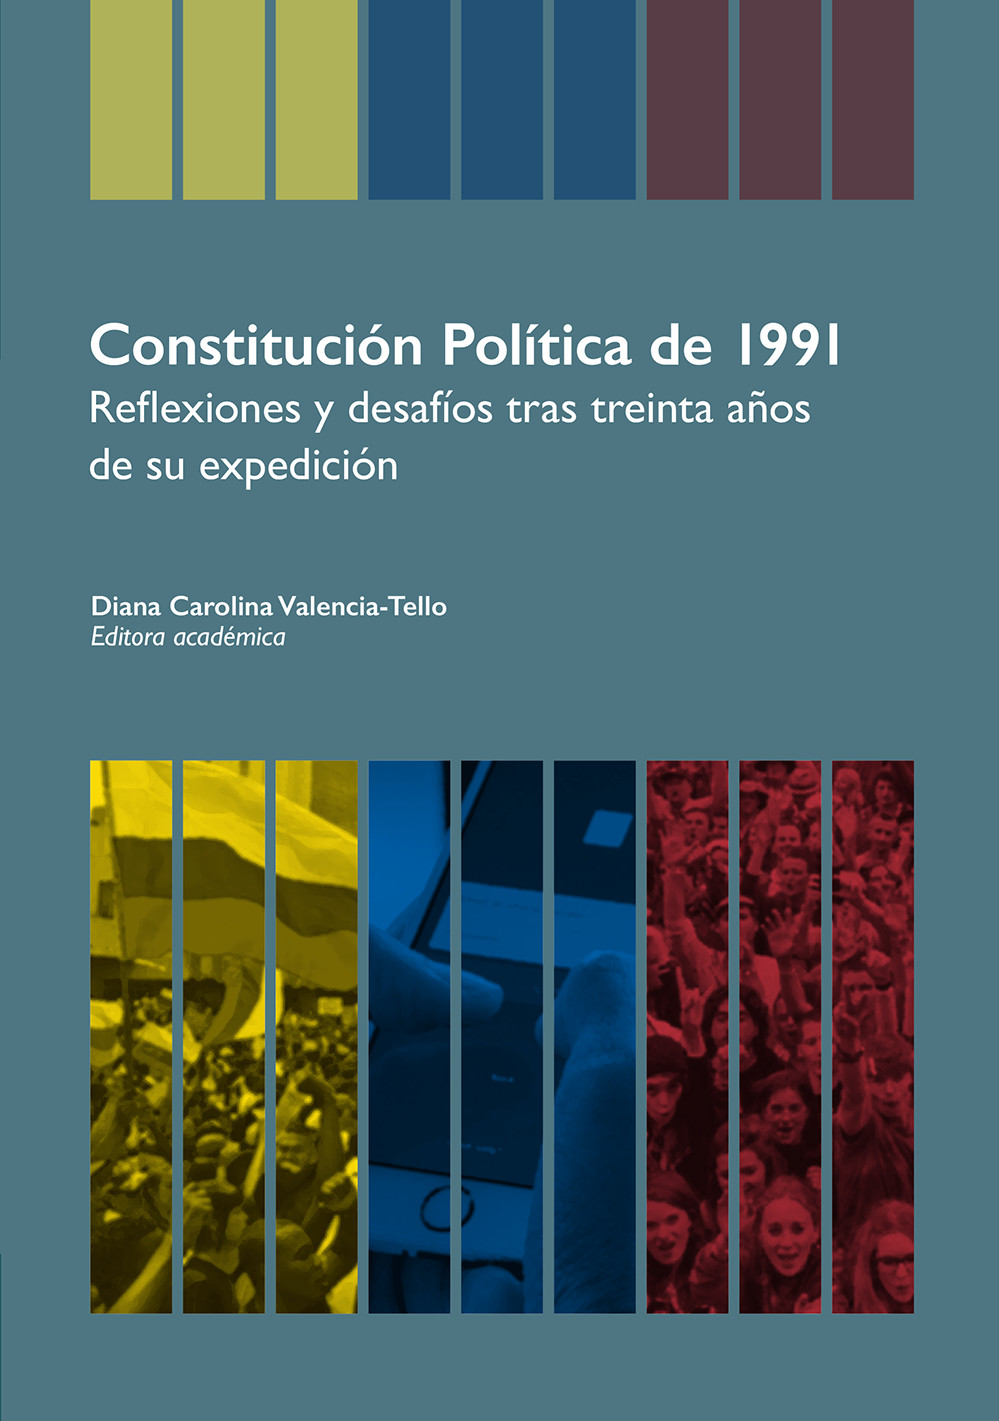 Imagen de portada del libro Constitución política de 1991